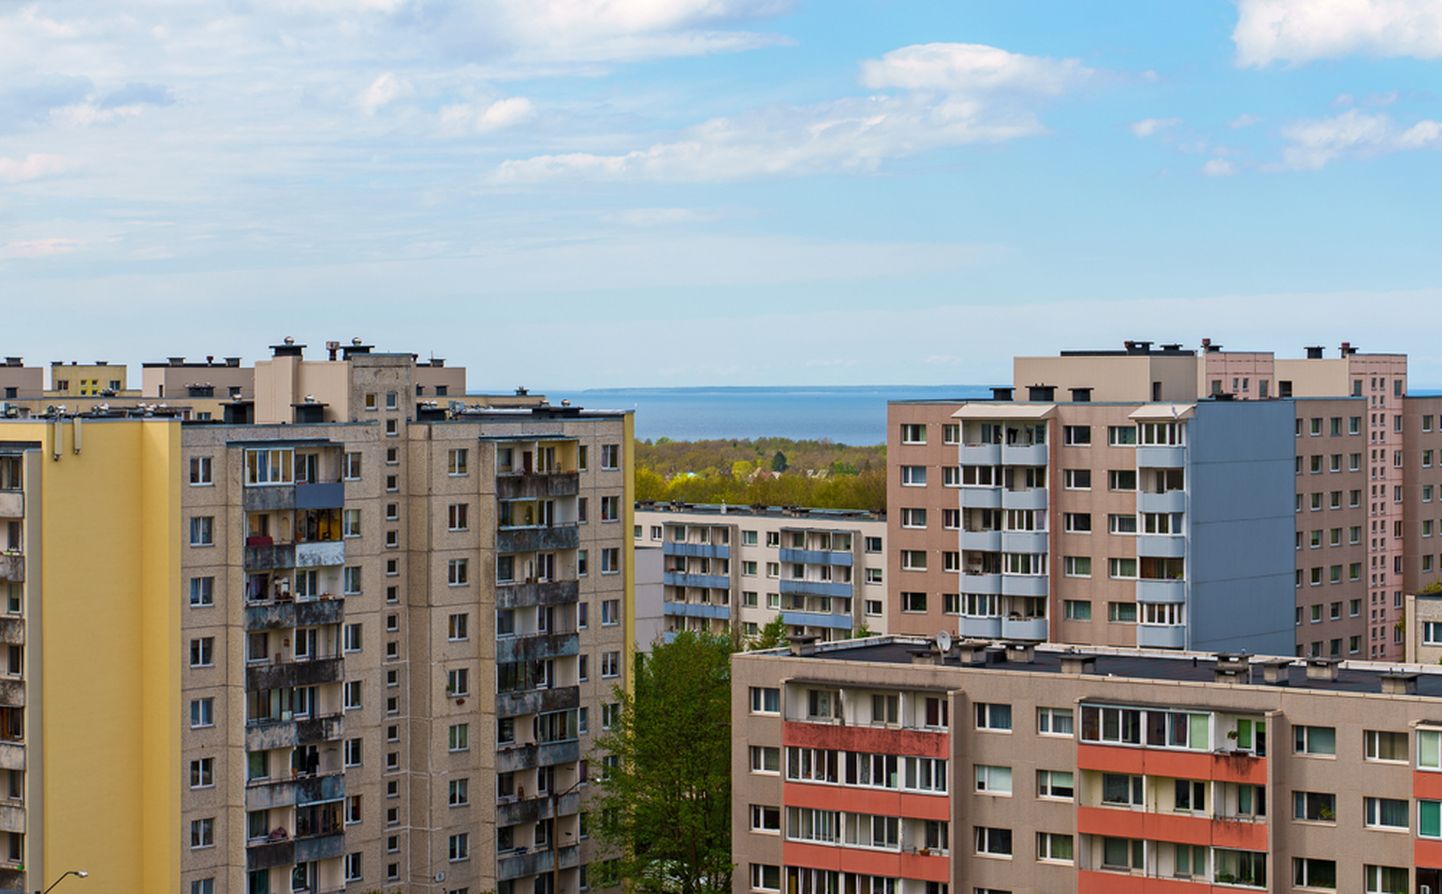 Pilt on illustreeriv. Foto: Shutterstock  Eesti Kindlustusseltside Liit (EKsL) käivitab korteriühistute tuleohutuse parandamiseks projektirahastuse konkursi, mi